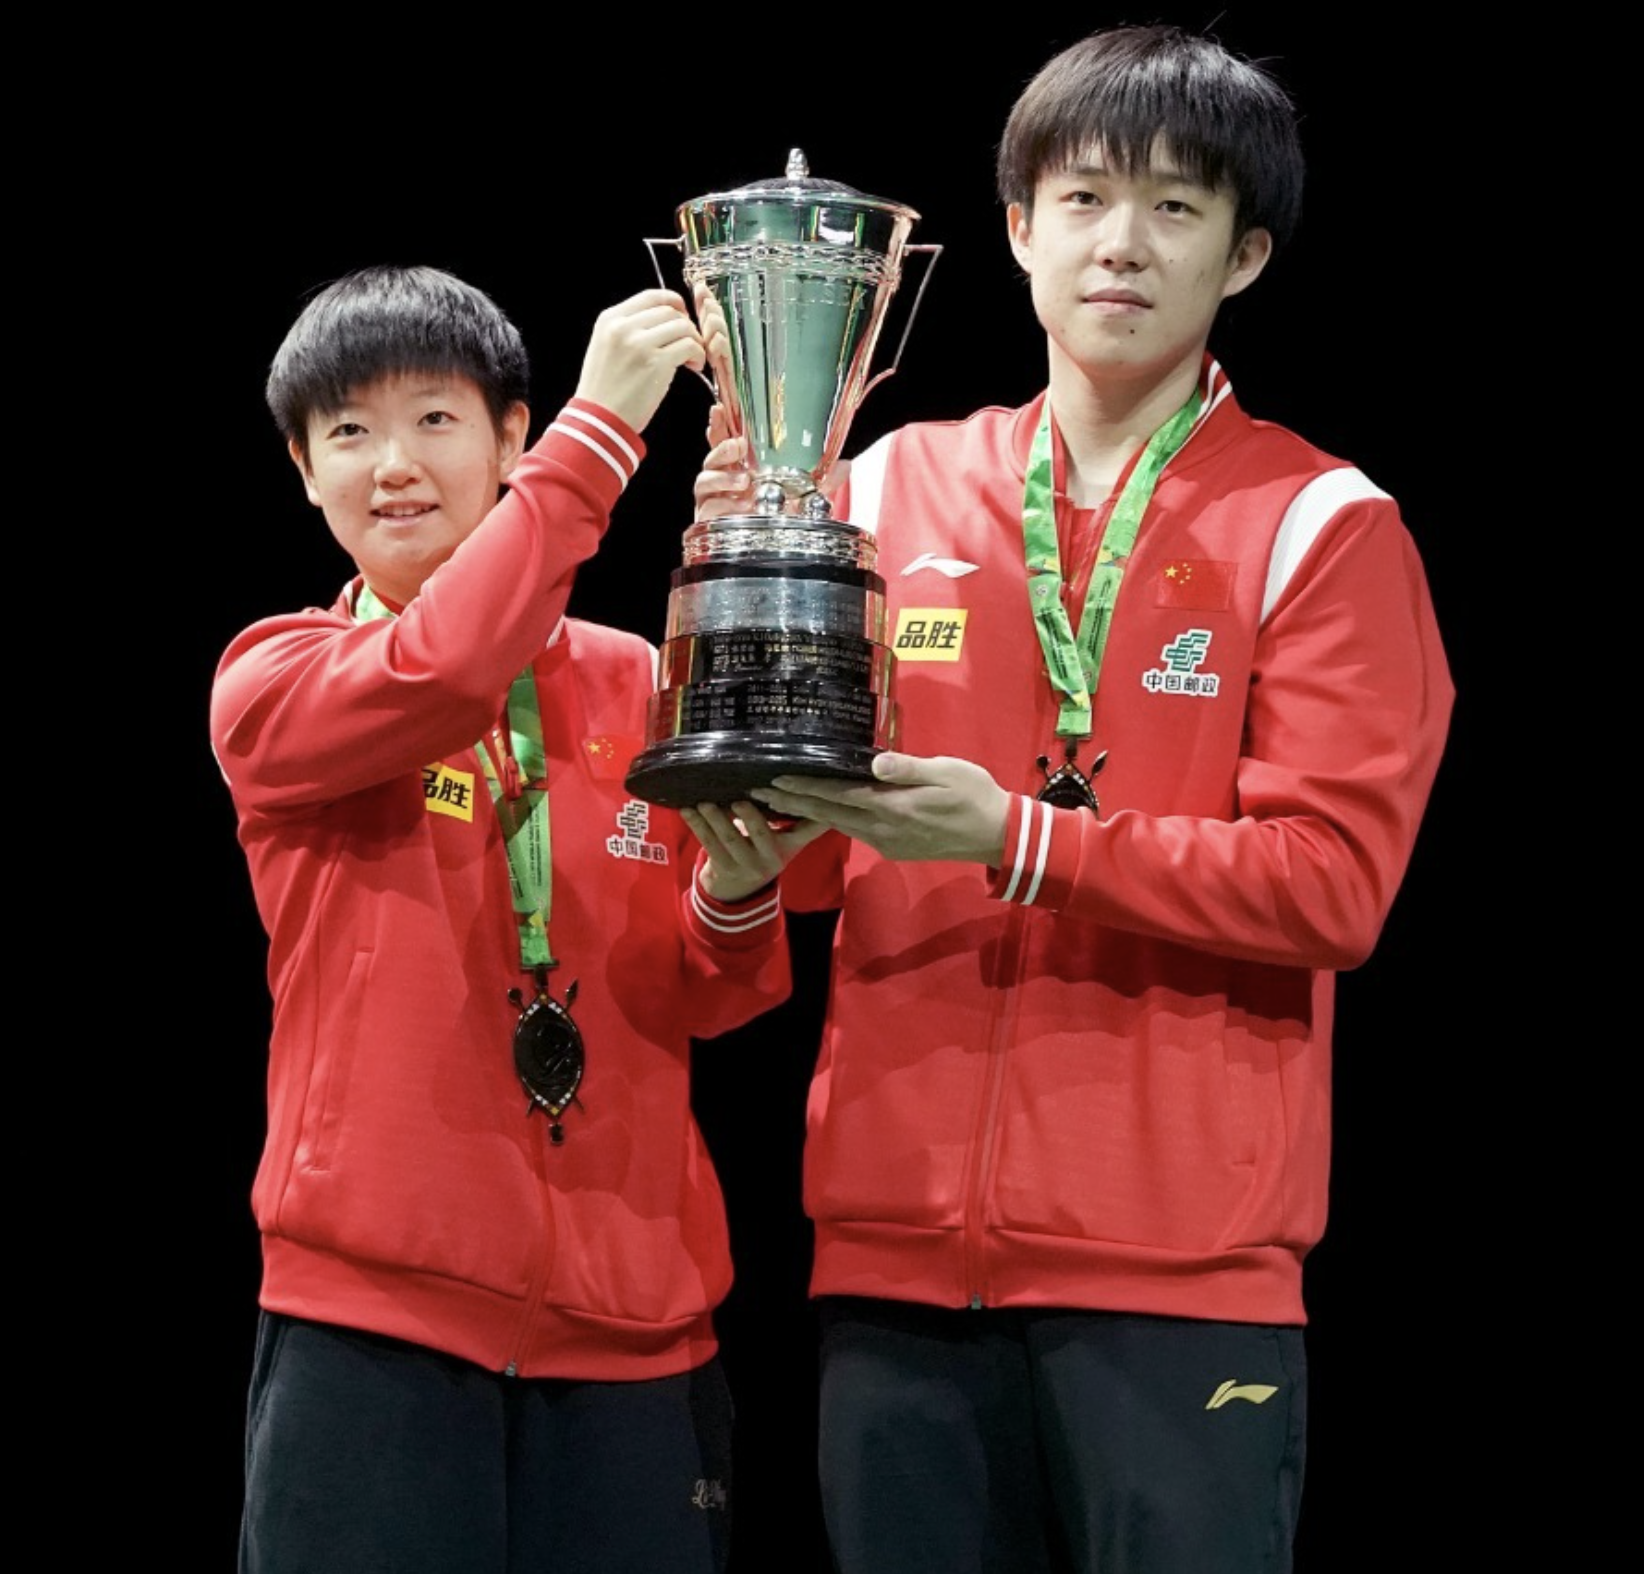 莎头组合卫冕混双冠军,中国队提前锁定世乒赛男子单打冠军